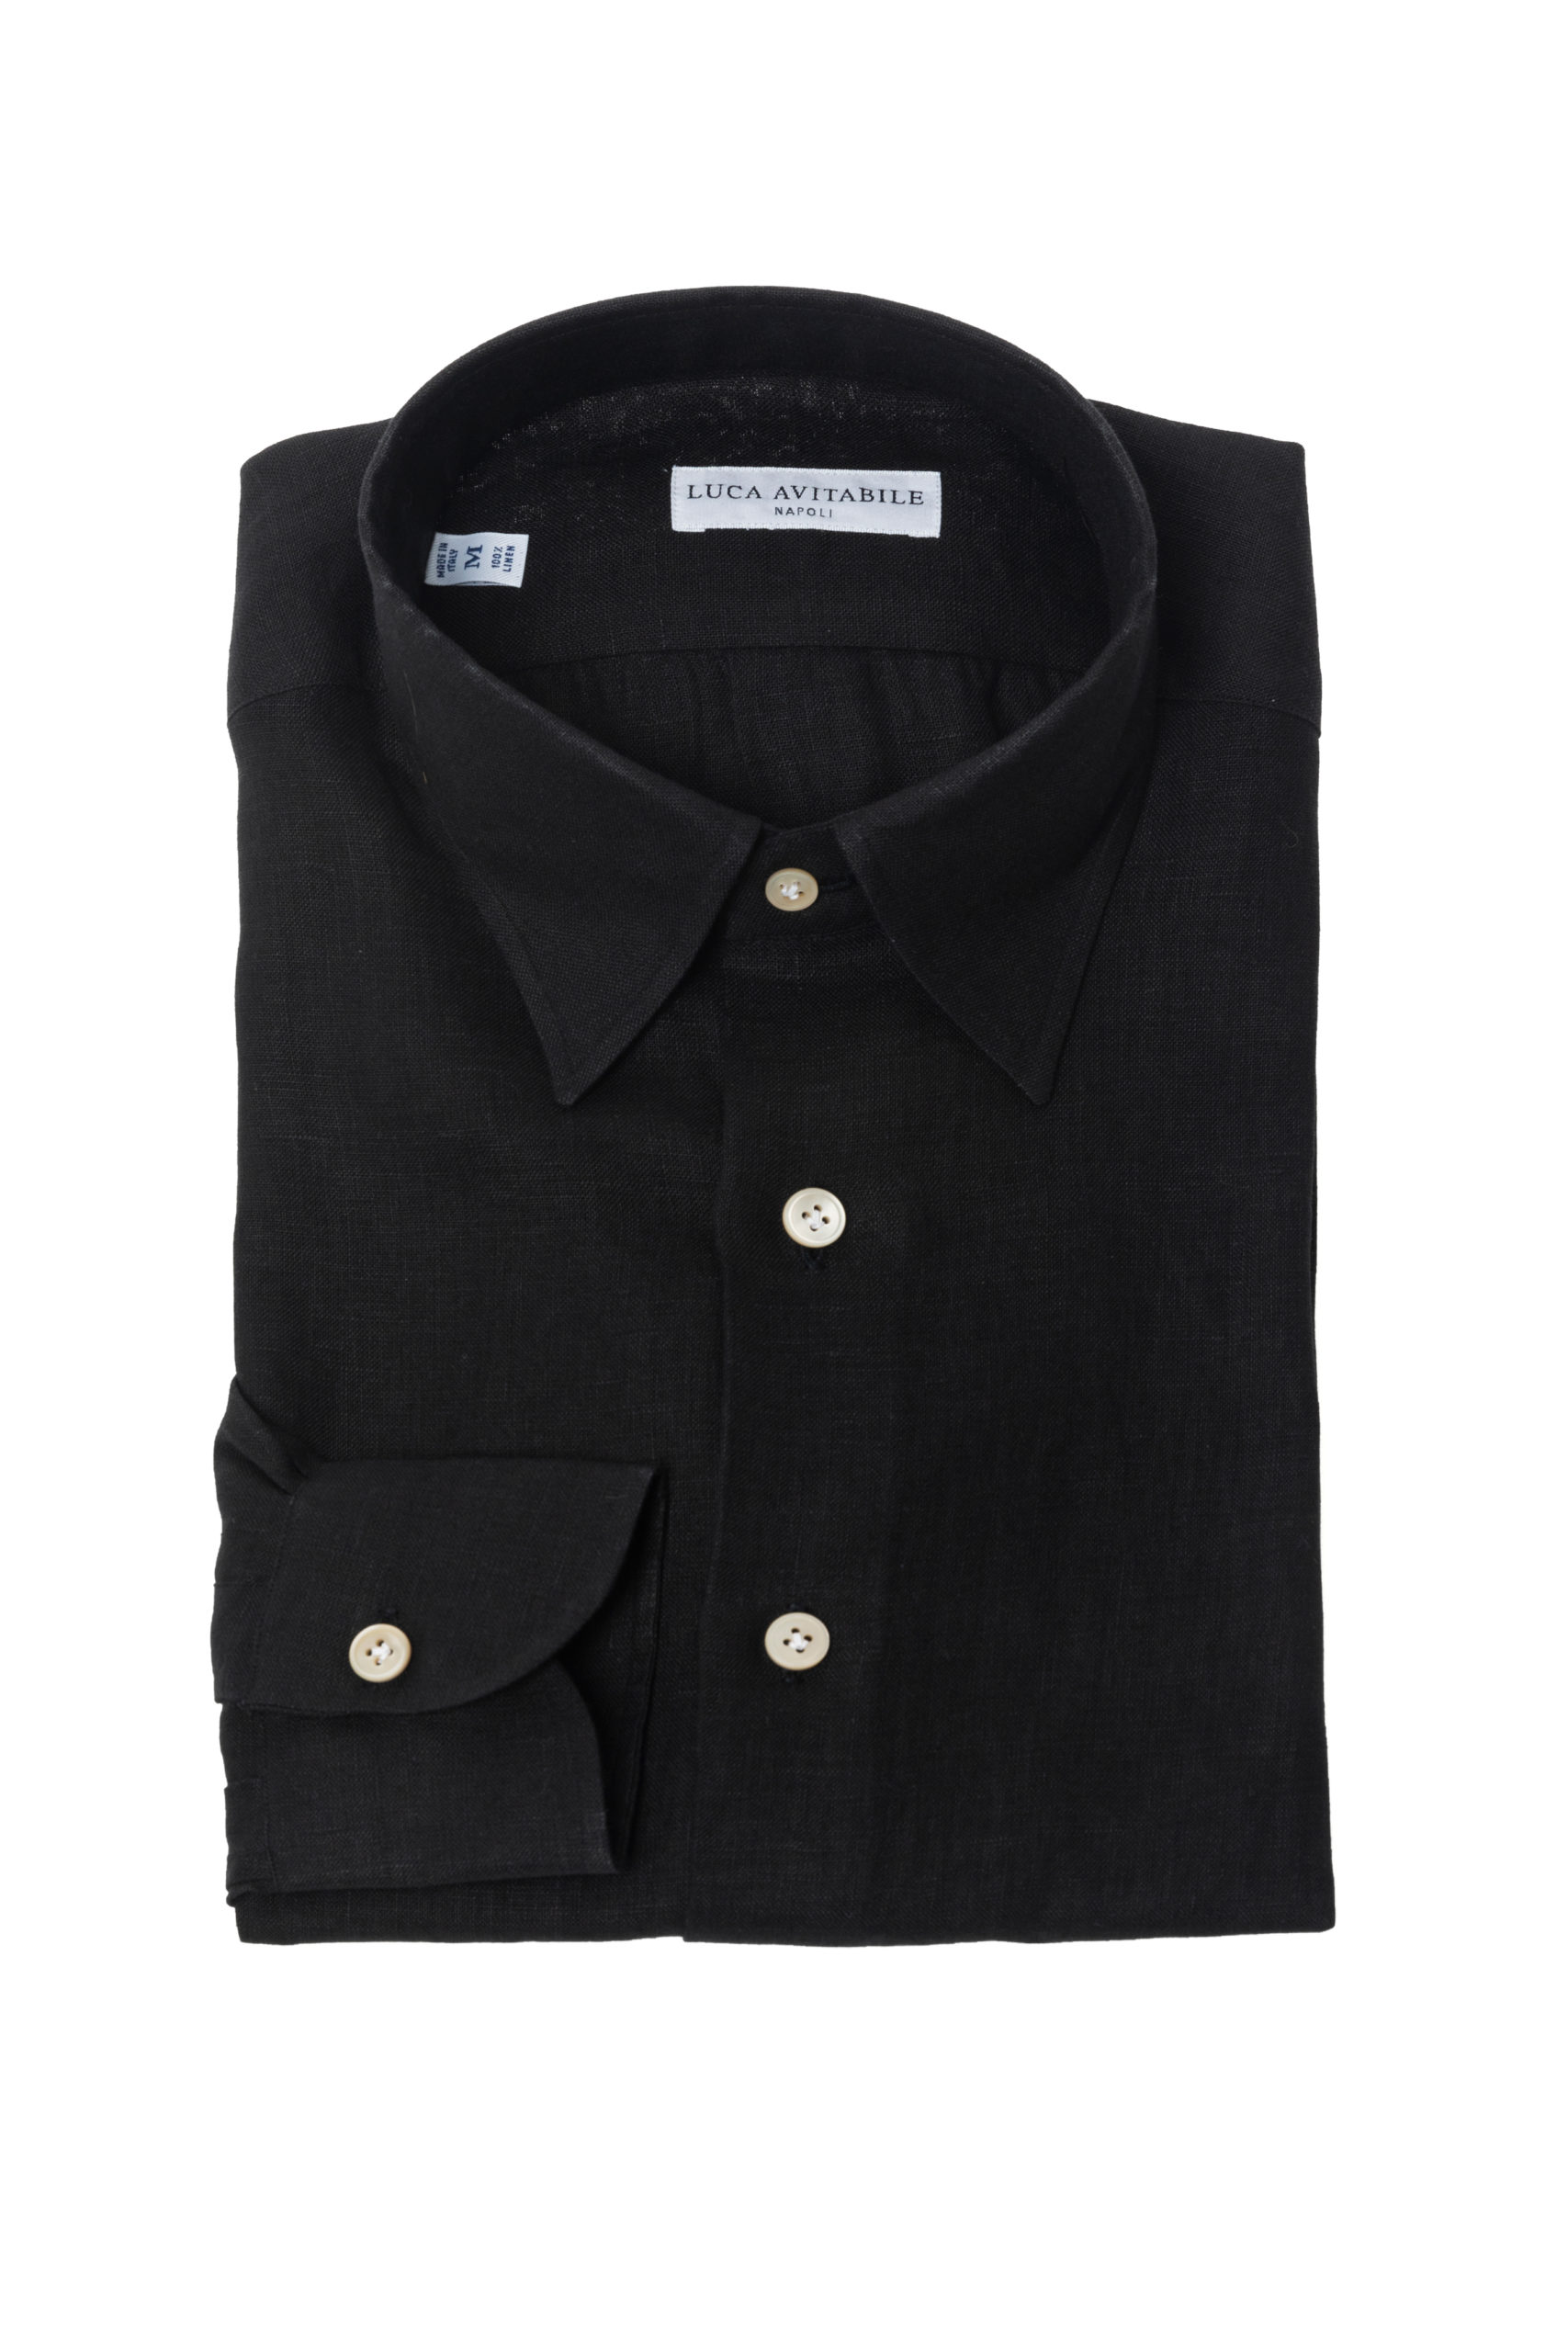 Primavera - Black Irish Linen Shirt - Luca Avitabile - Handmade Shirt